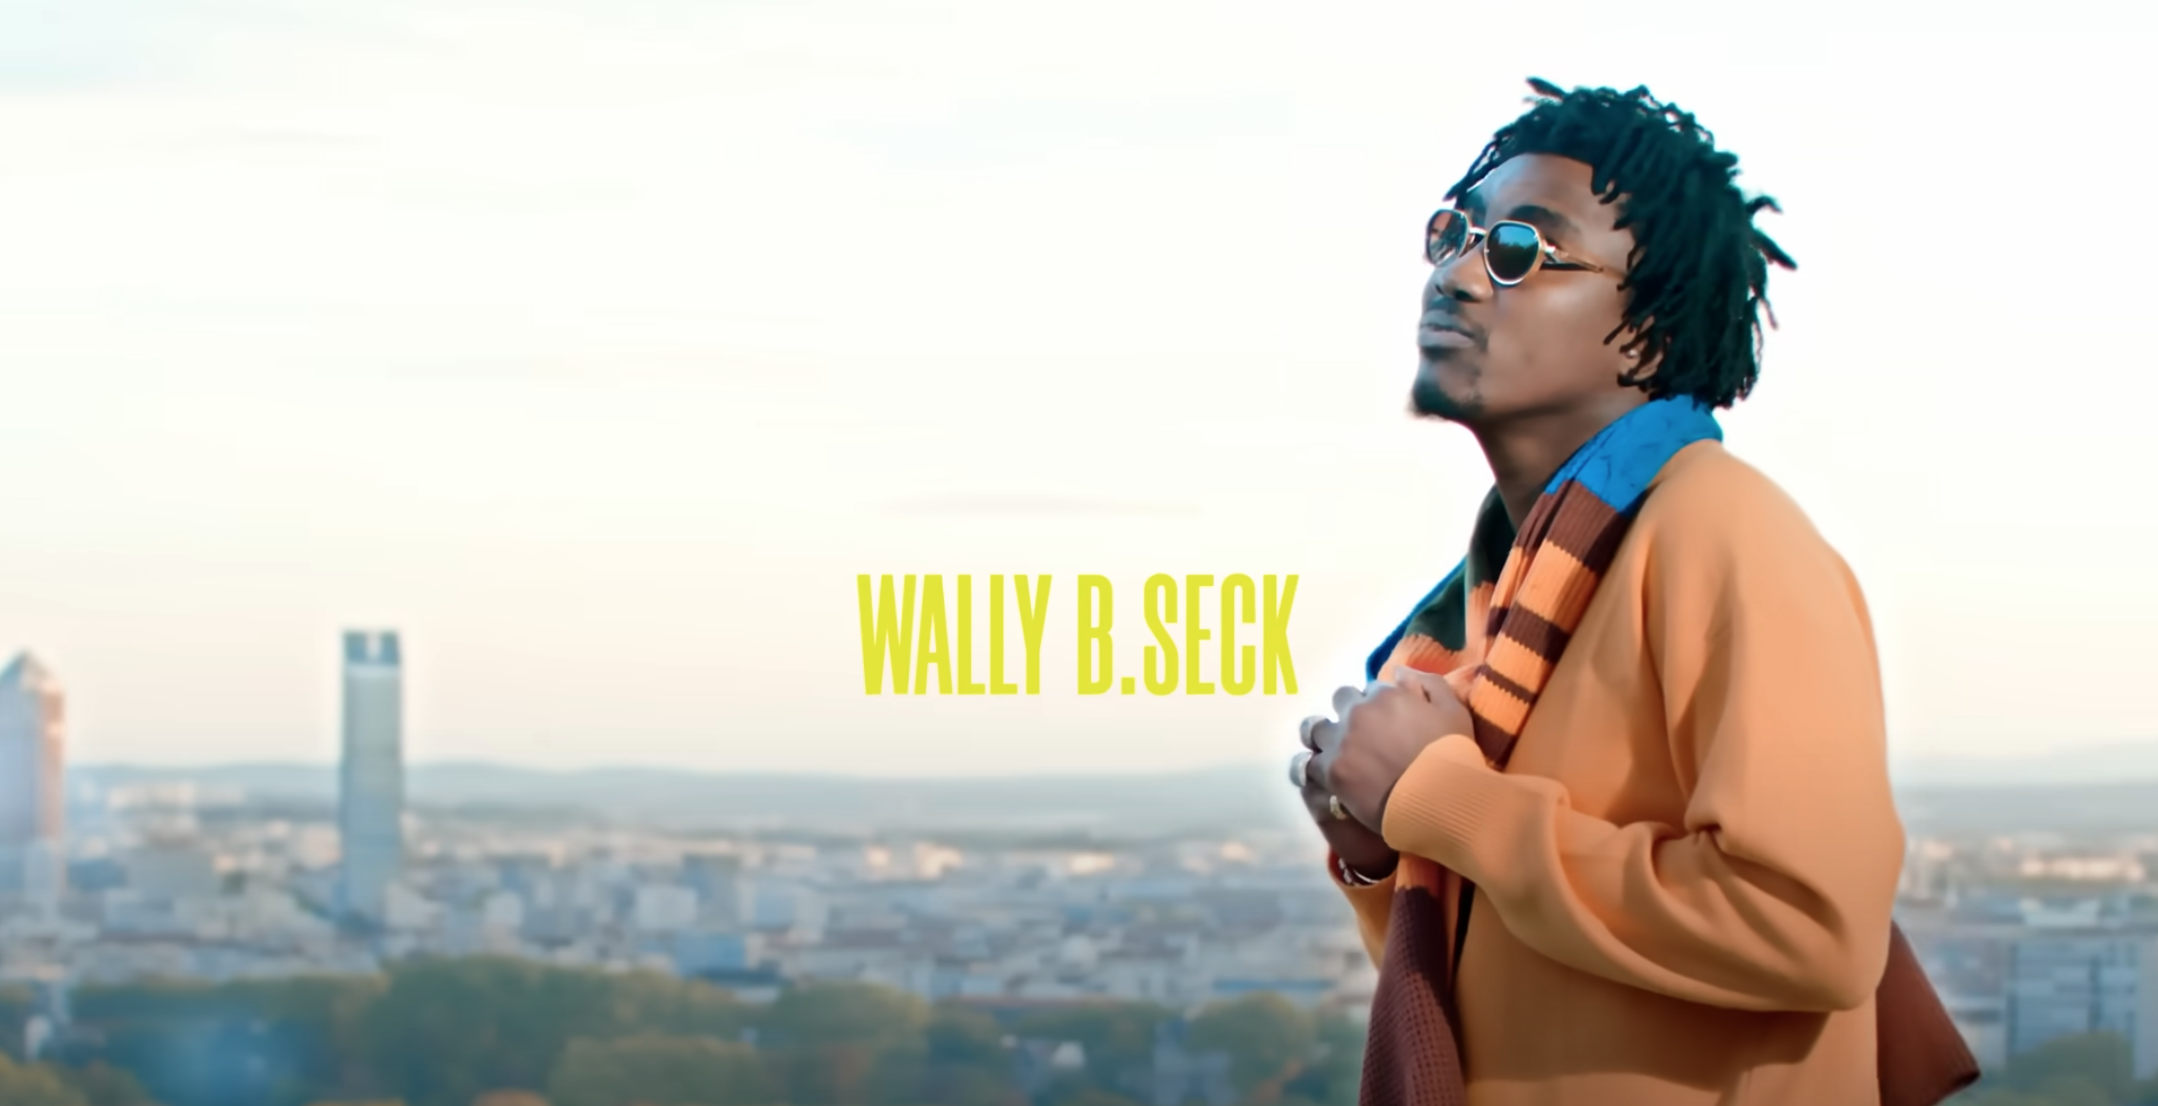 Wally B. Seck – Balma (Official Video)